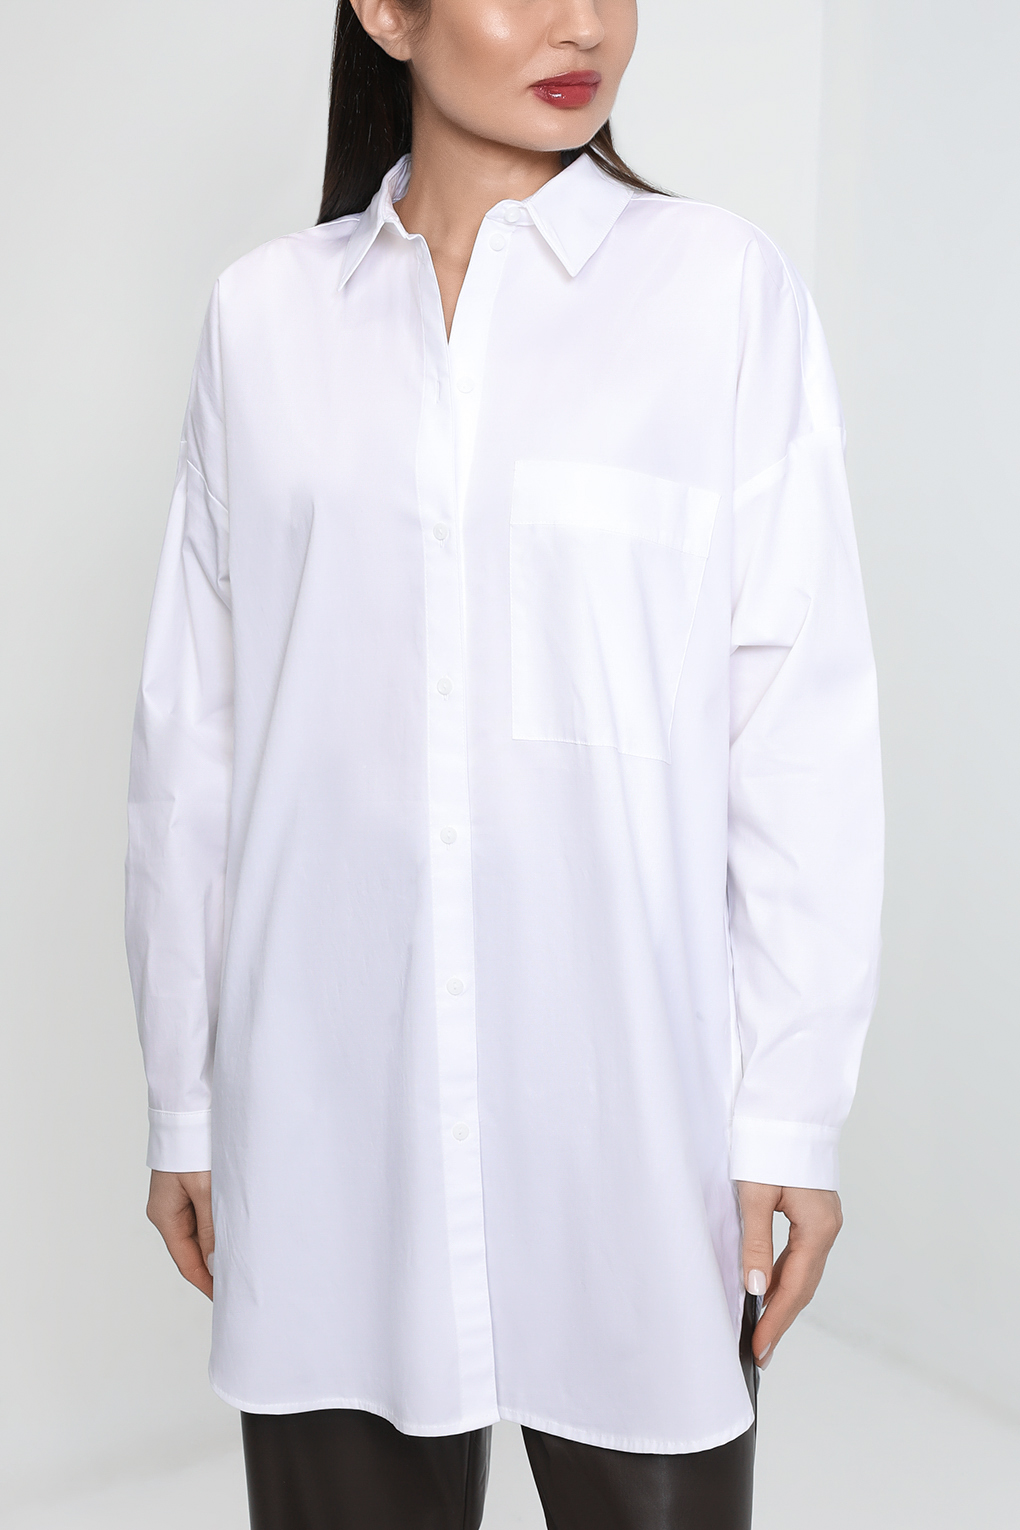 Рубашка женская Esprit Edc 992CC1F306 белая S